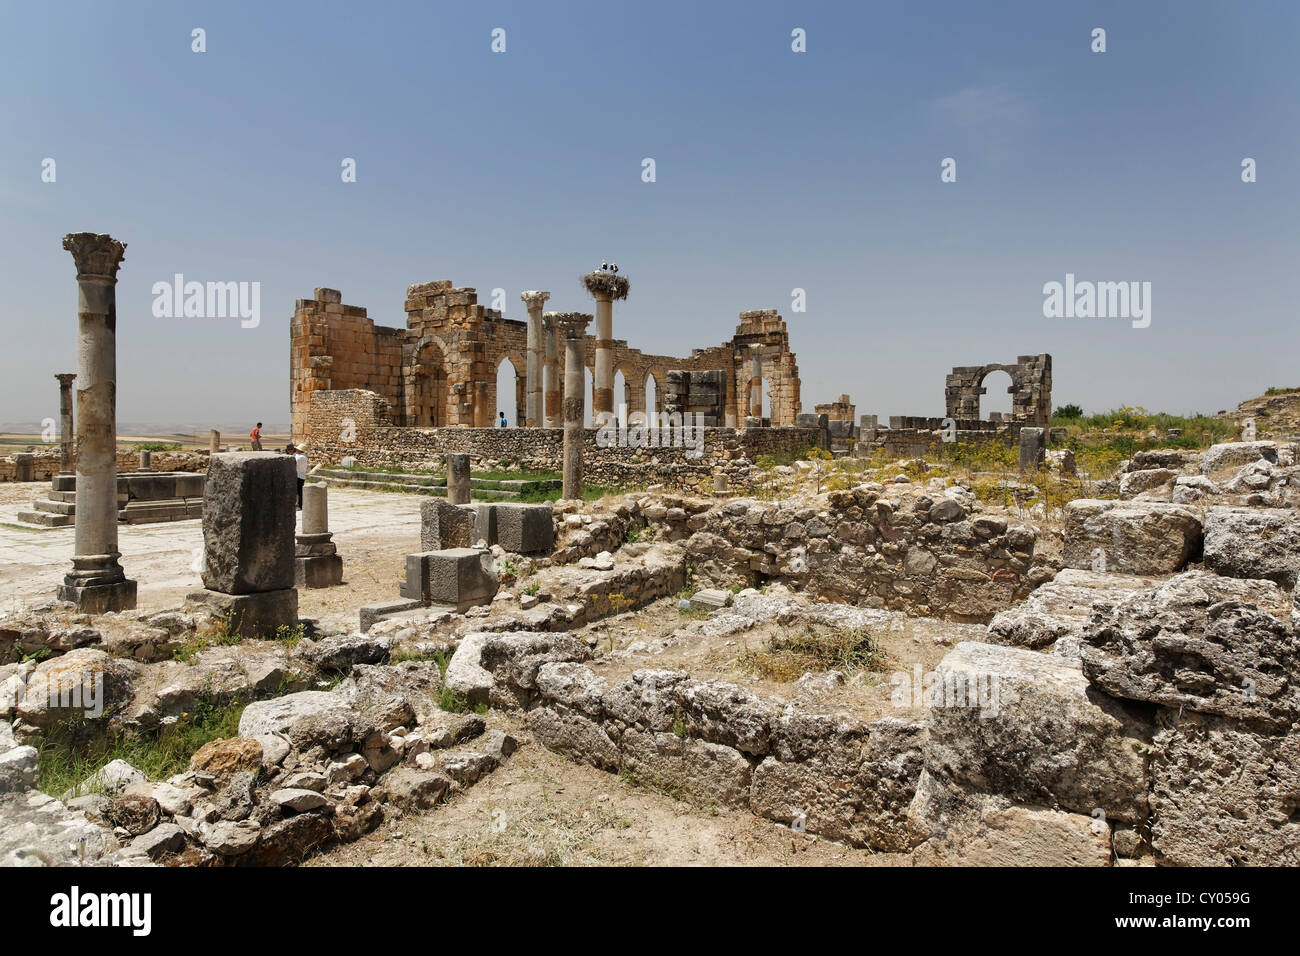 Le Forum à le site archéologique romain de Volubilis, Site du patrimoine mondial de l'UNESCO, Meknès, Meknès-Tafilalet, Maroc, Maghreb Banque D'Images